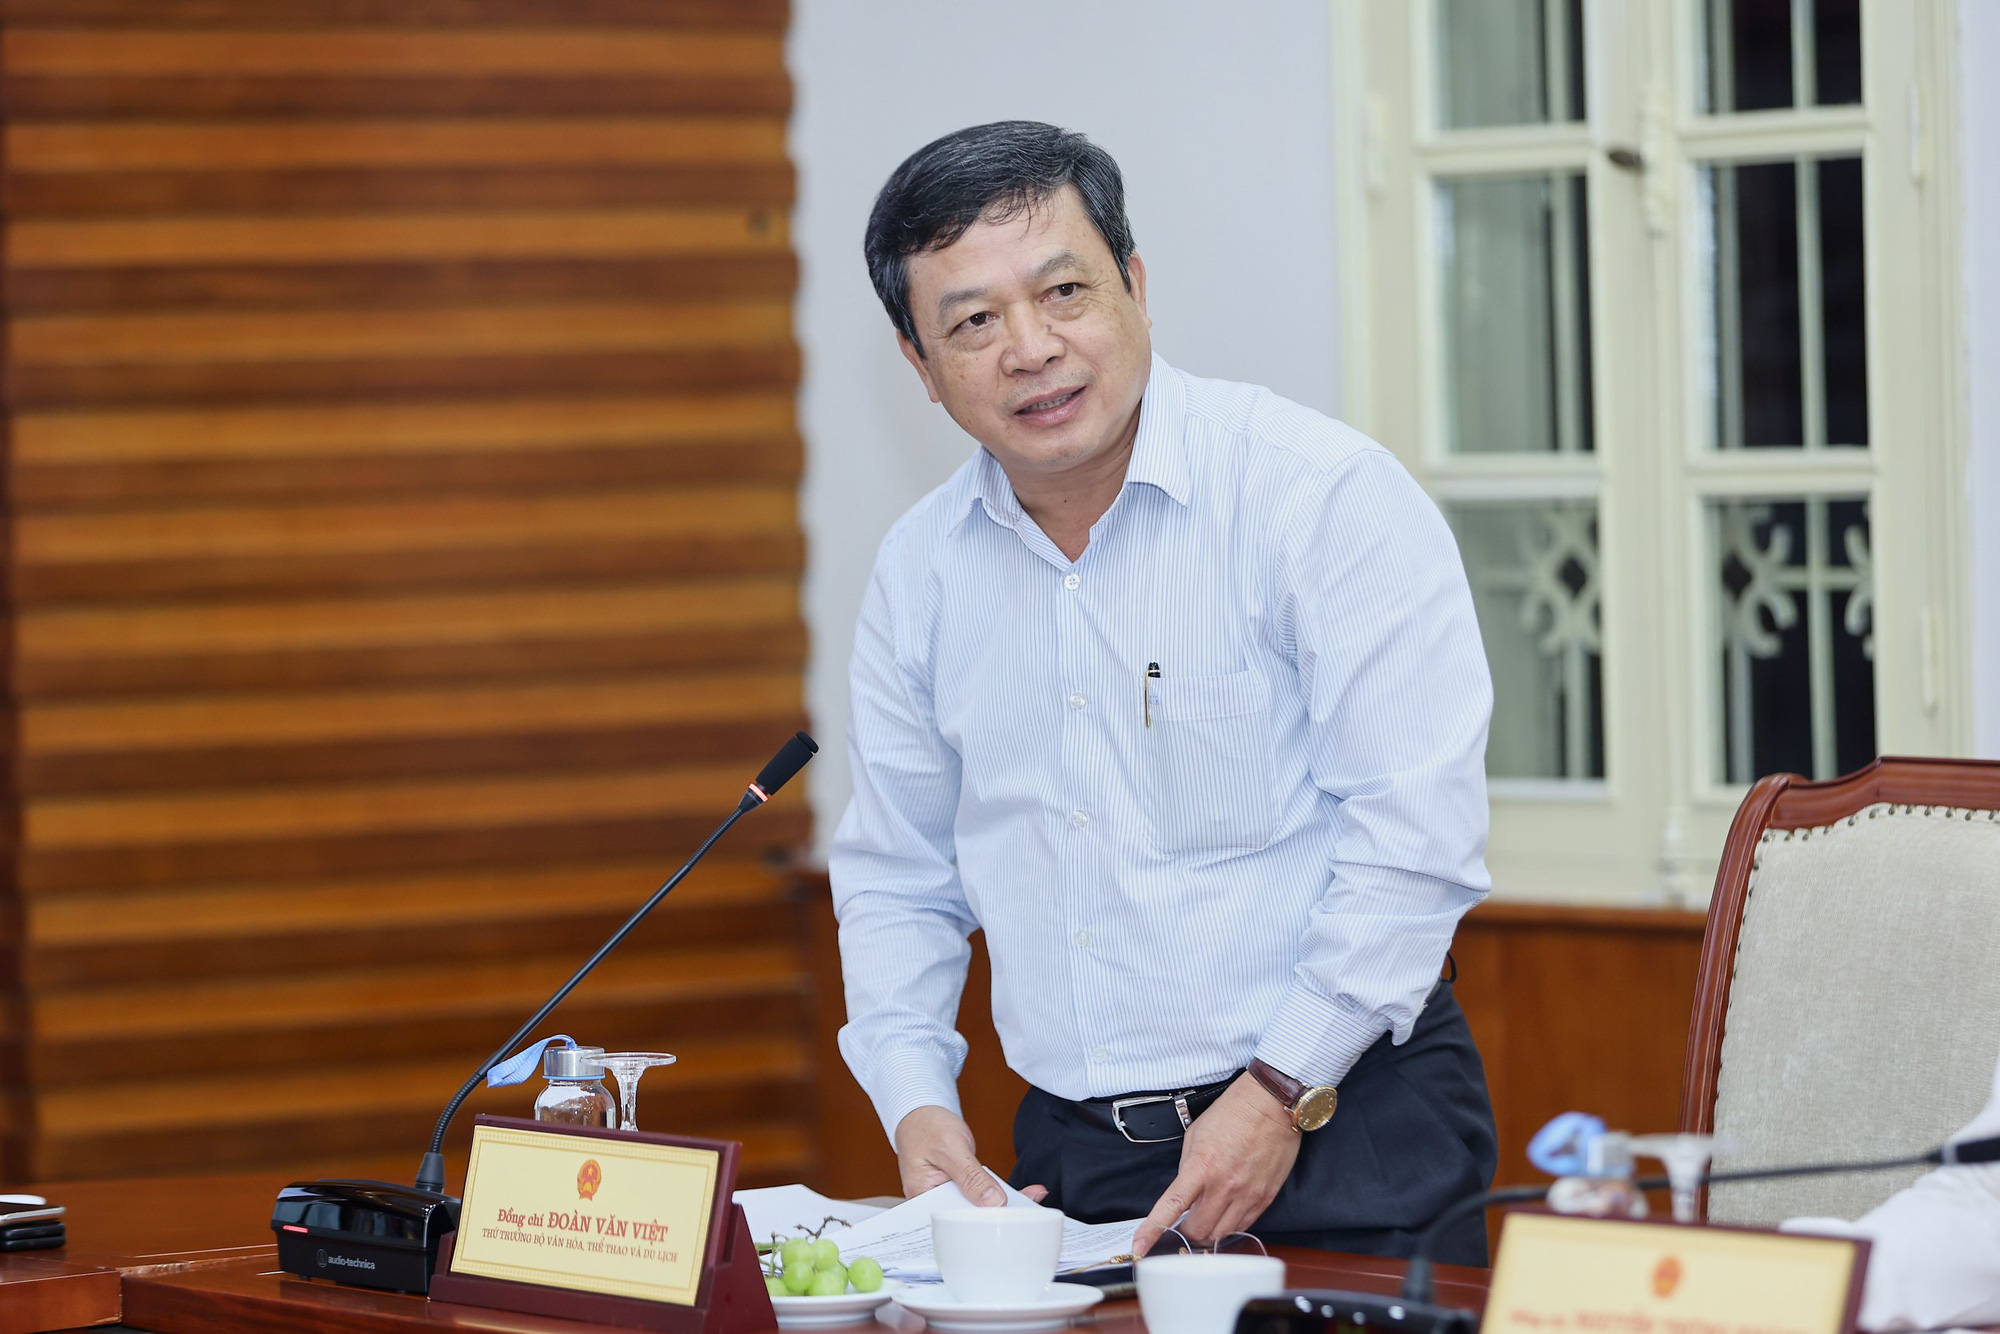 Bộ trưởng Nguyễn Văn Hùng: “Di tích lịch sử chính là báu vật vô giá của nhân dân Quảng Trị, phải giữ được thì mới phát triển lâu dài và bền vững” - Ảnh 3.